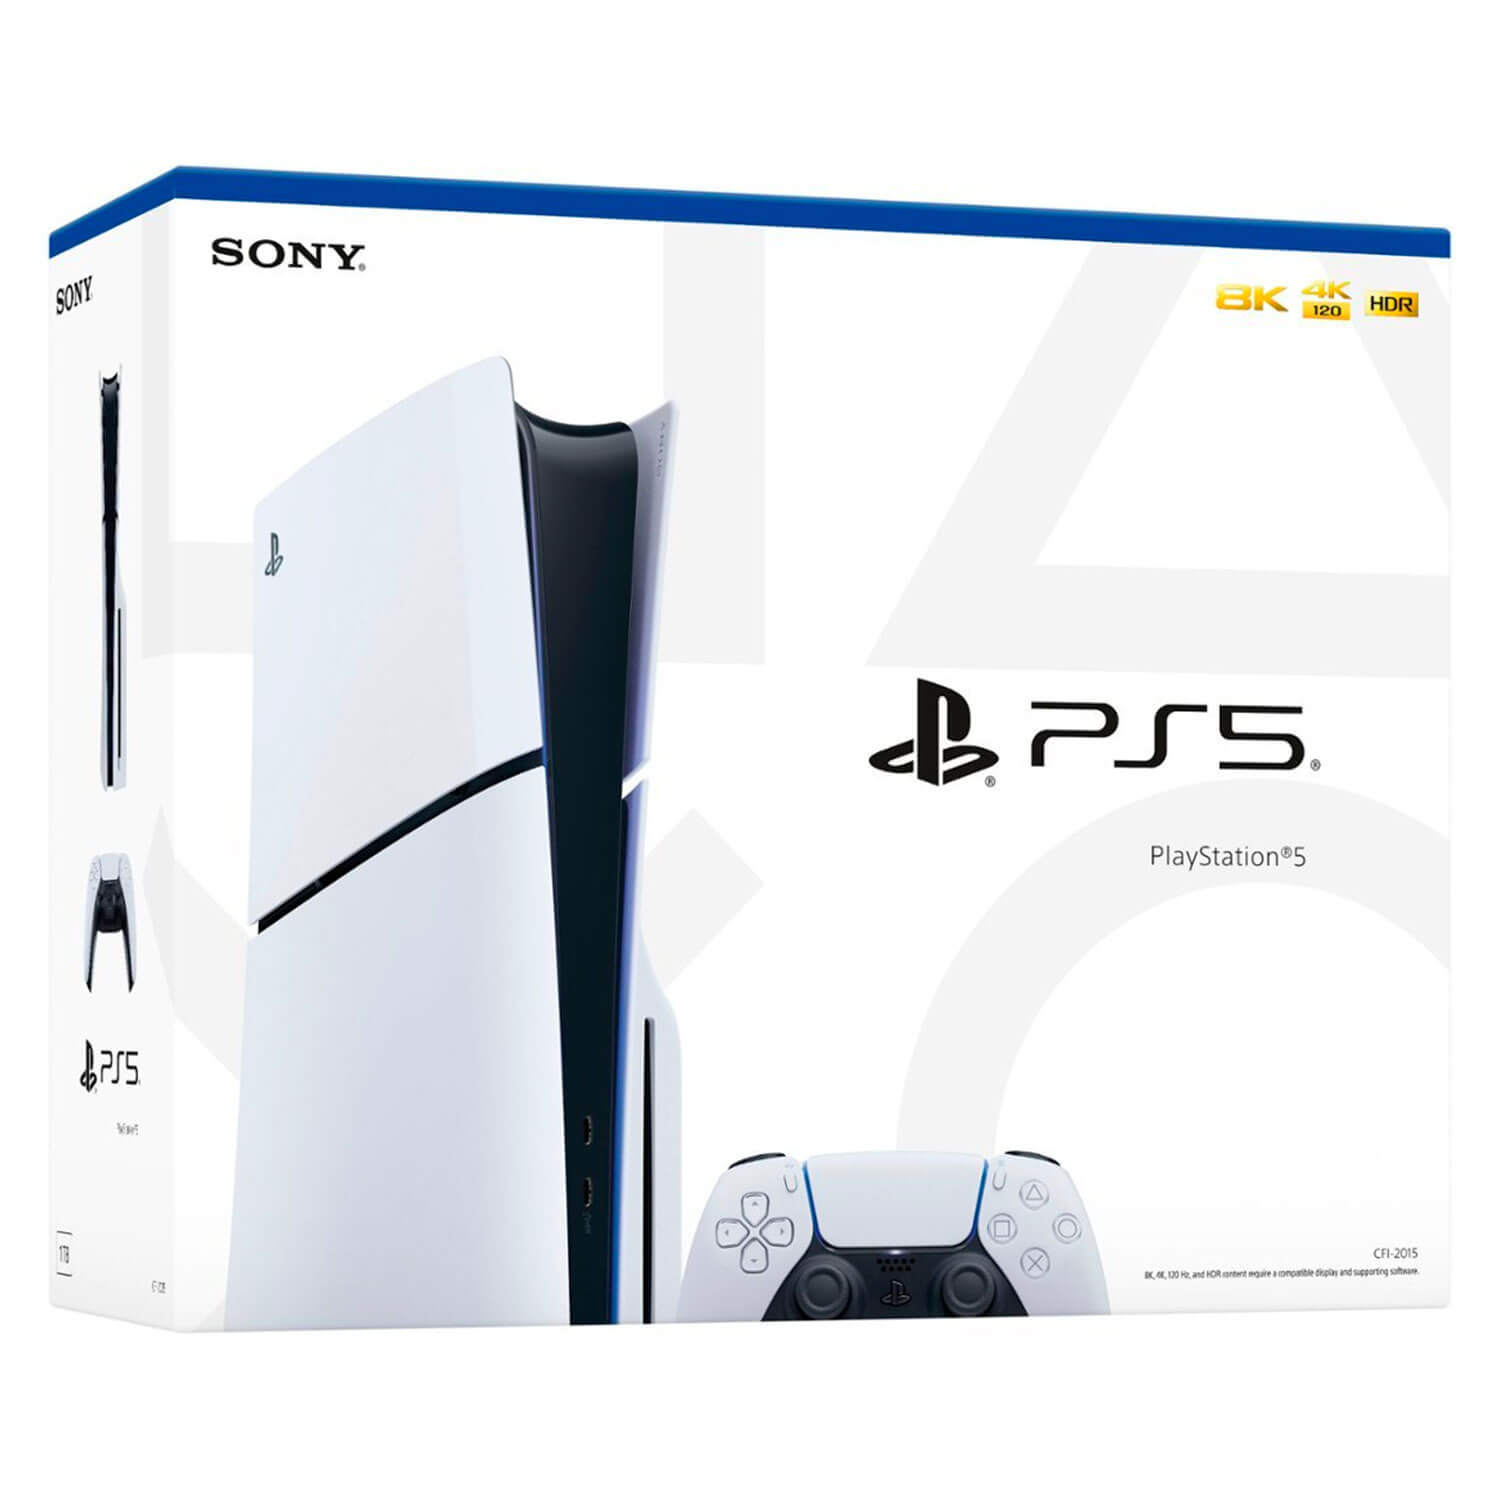 Console Sony Playstation 5 Slim CFI-2015A 8K 1TB SSD